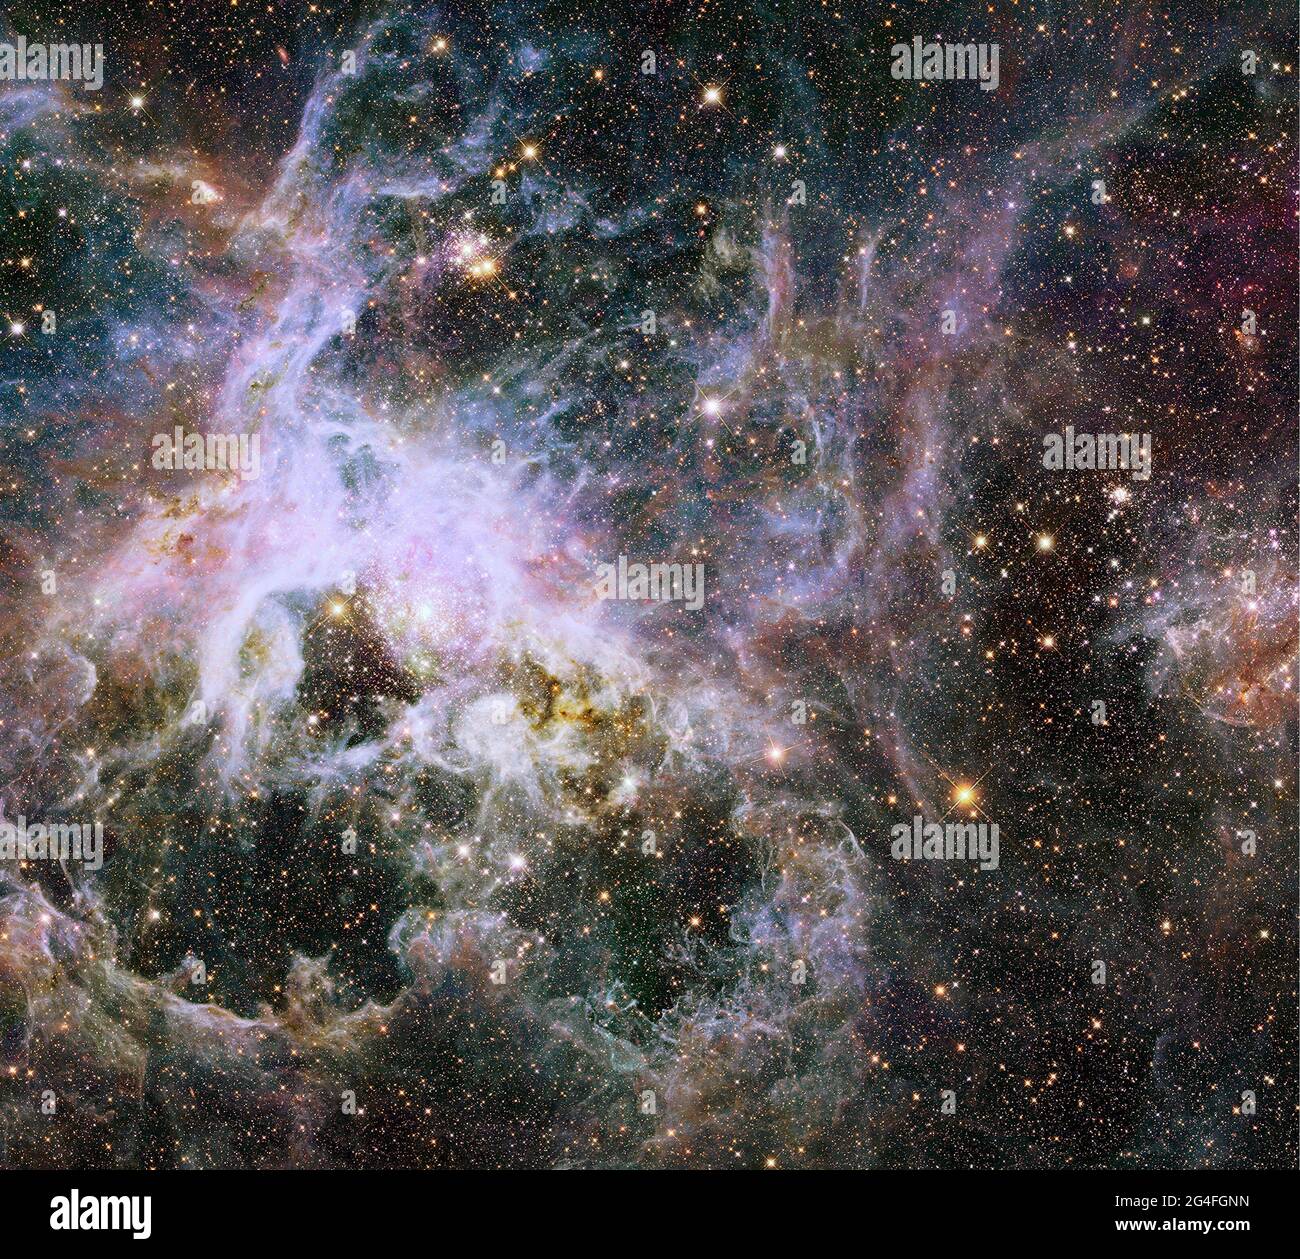 TRANTULAR NEBULOSA, SPAZIO ESTERNO - 09 gennaio 2014 - come sollevare un velo gigante, la visione a infrarossi del telescopio spaziale Hubble della NASA scopre una daz Foto Stock